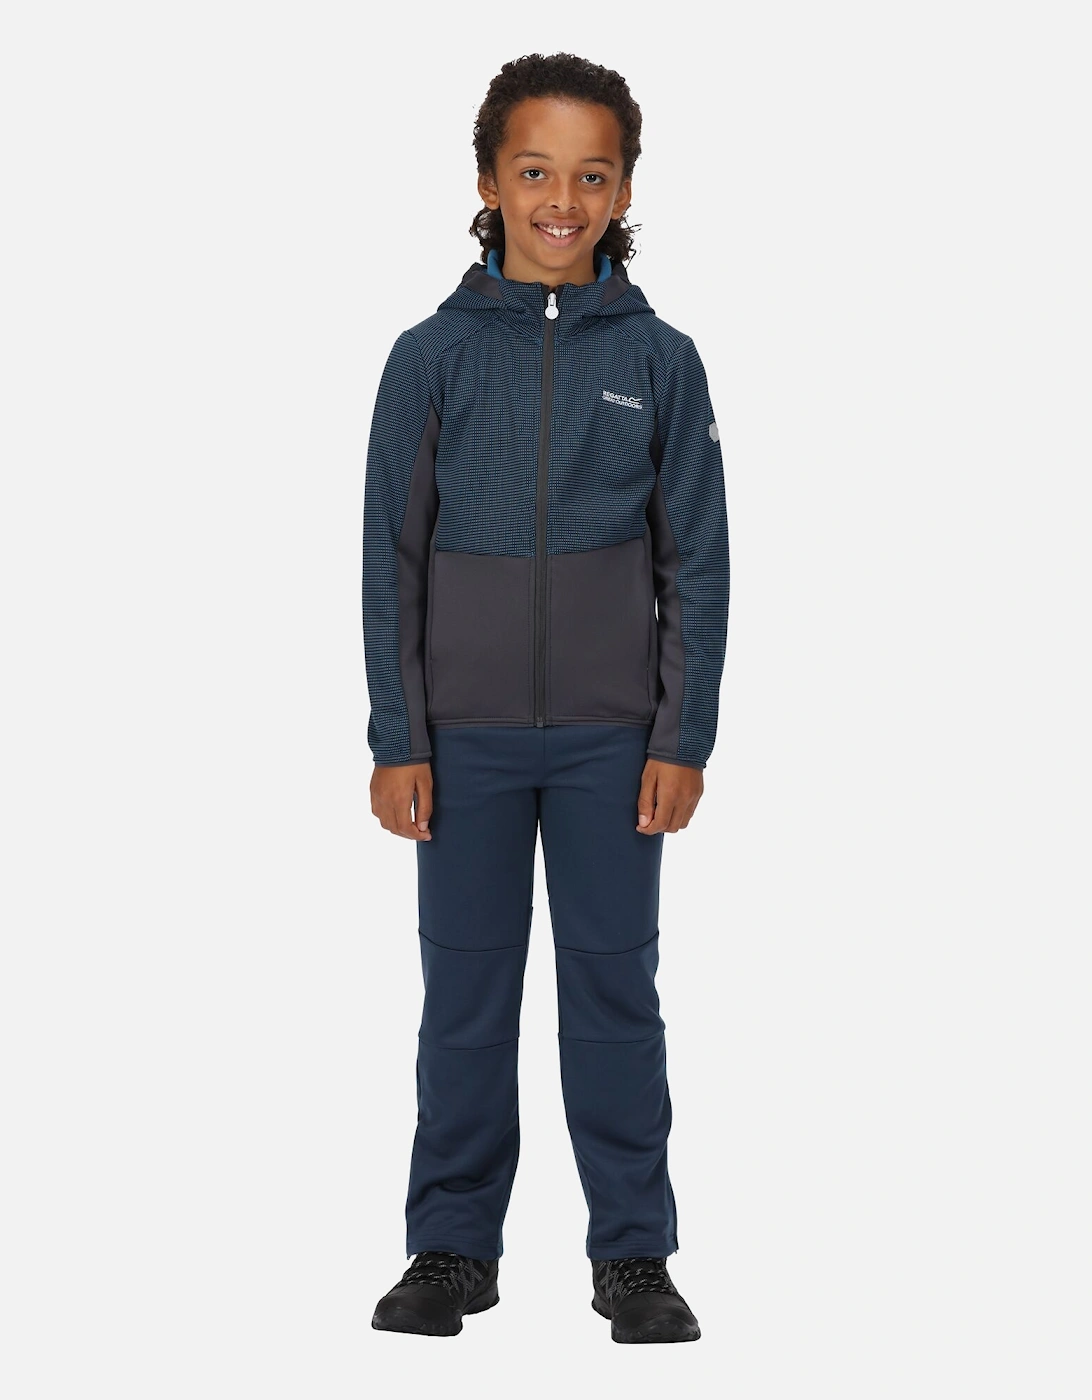 Childrens/Kids Highton Full Zip Fleece Jacket